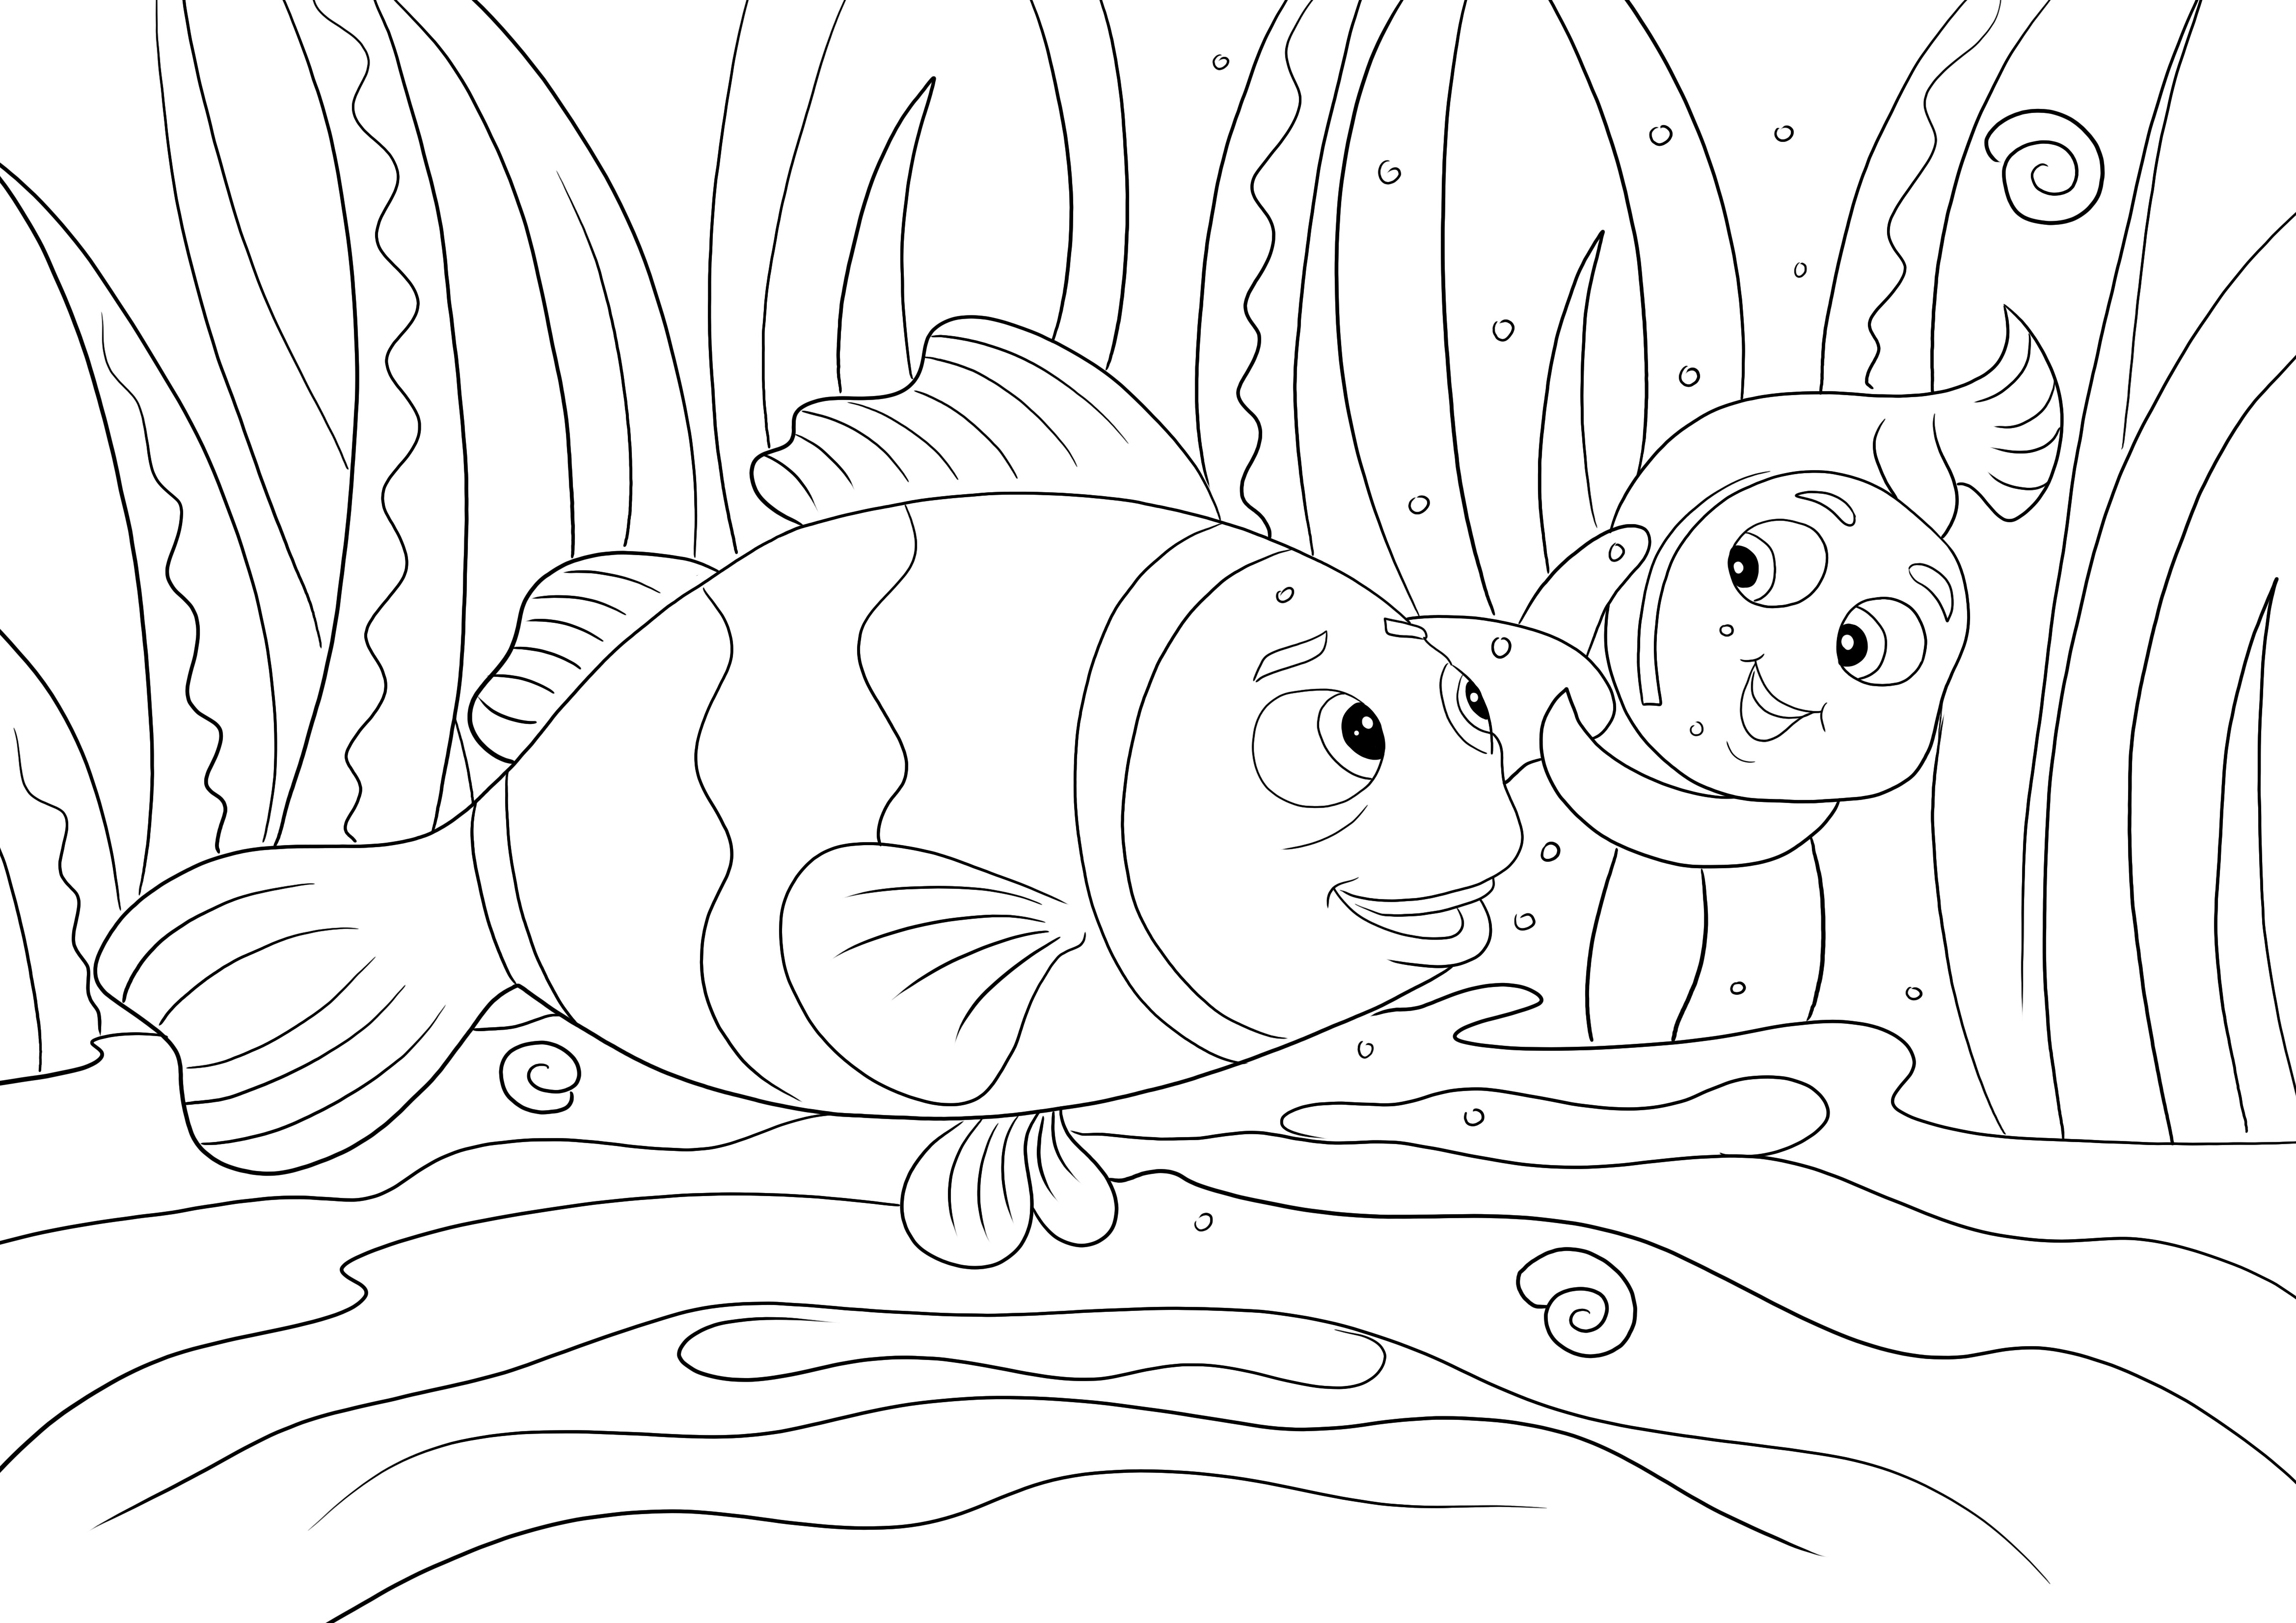 Nemo i Marylin pływają - łatwy do wydrukowania i pokolorowania obrazek